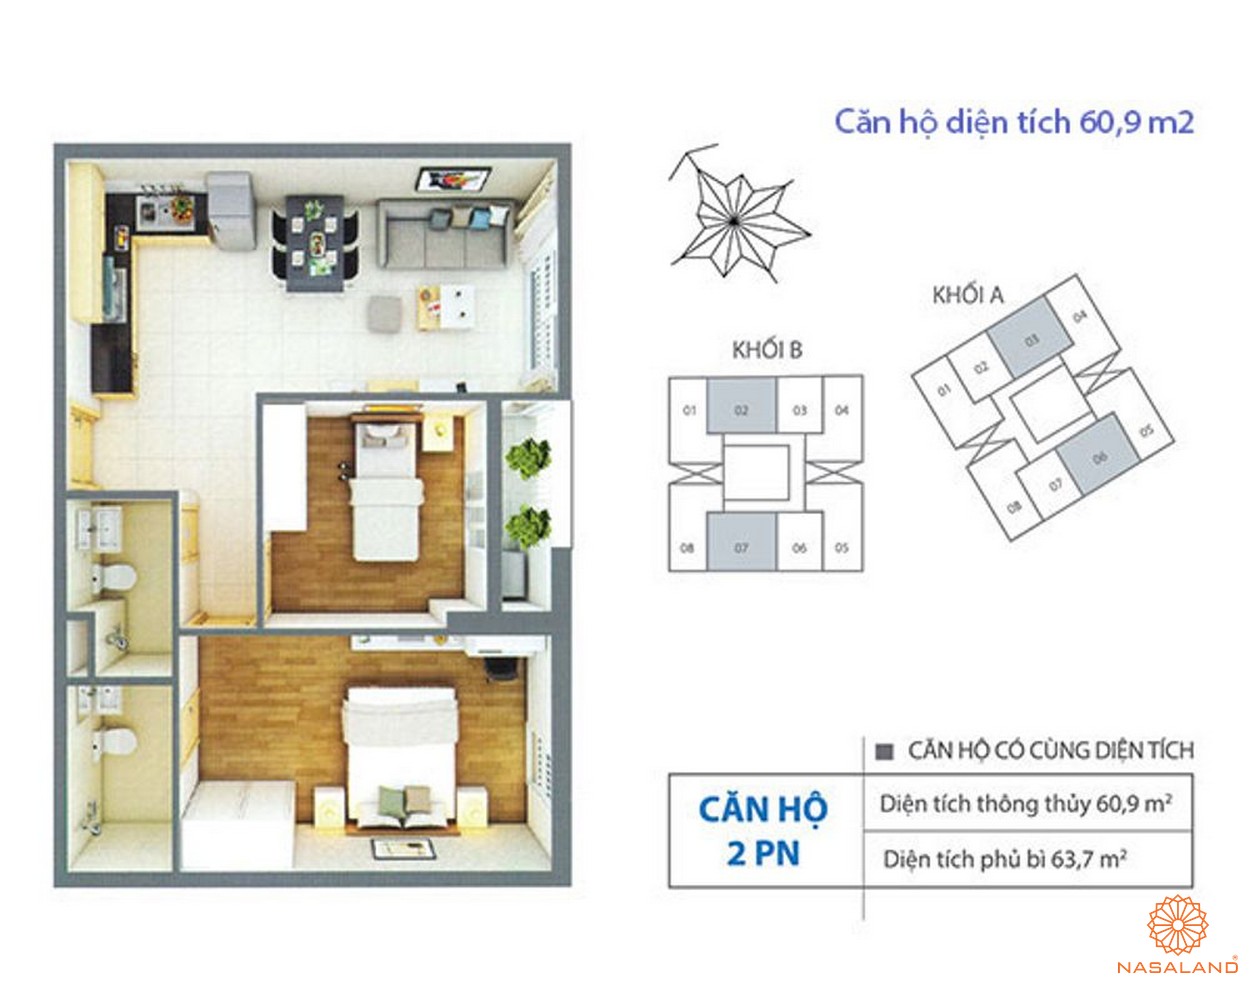 Thiết kế điển hình dự án căn hộ với diện tích 60.9 m2